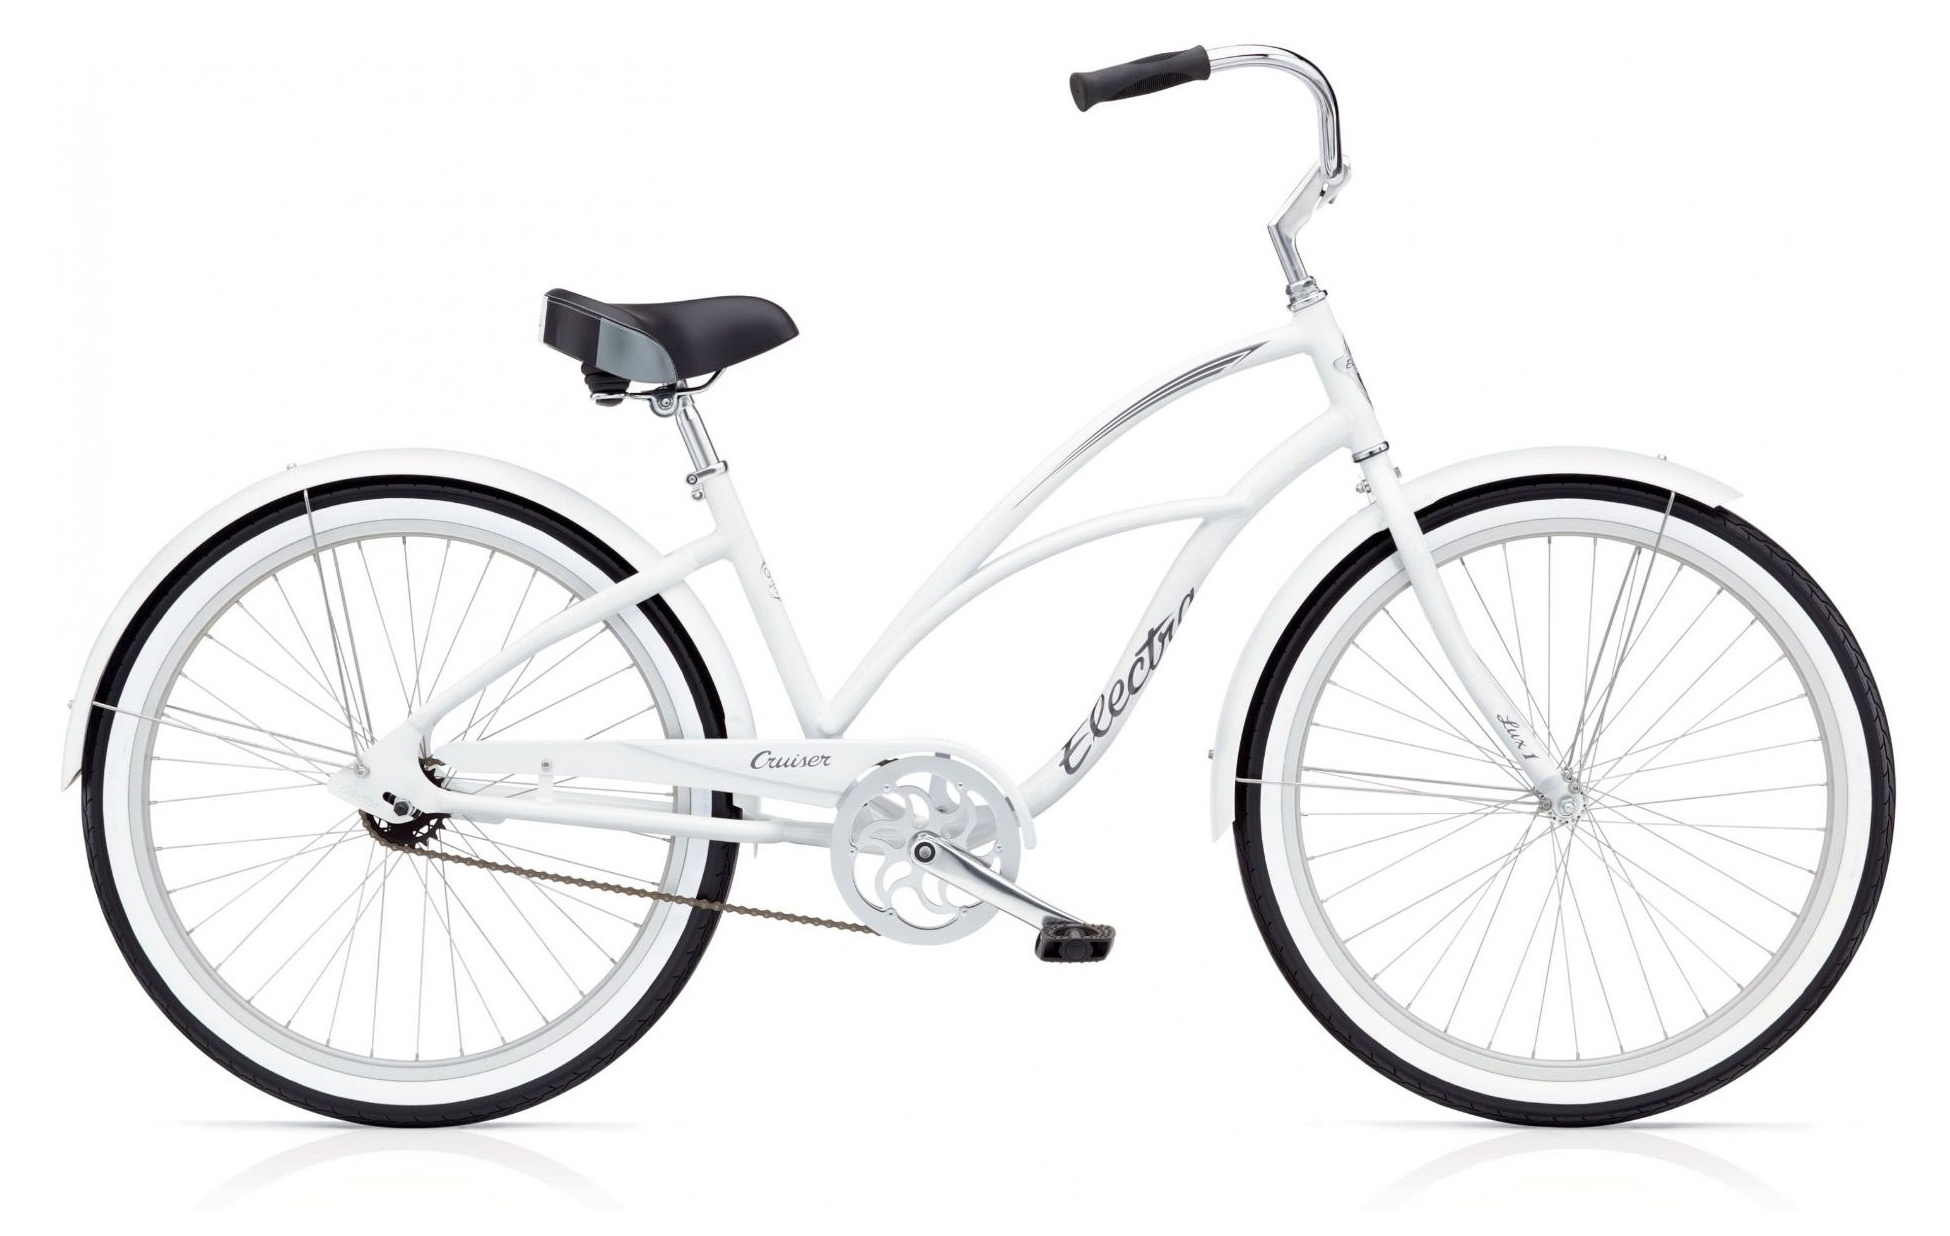  Отзывы о Женском велосипеде Electra Cruiser Lux 1 2019